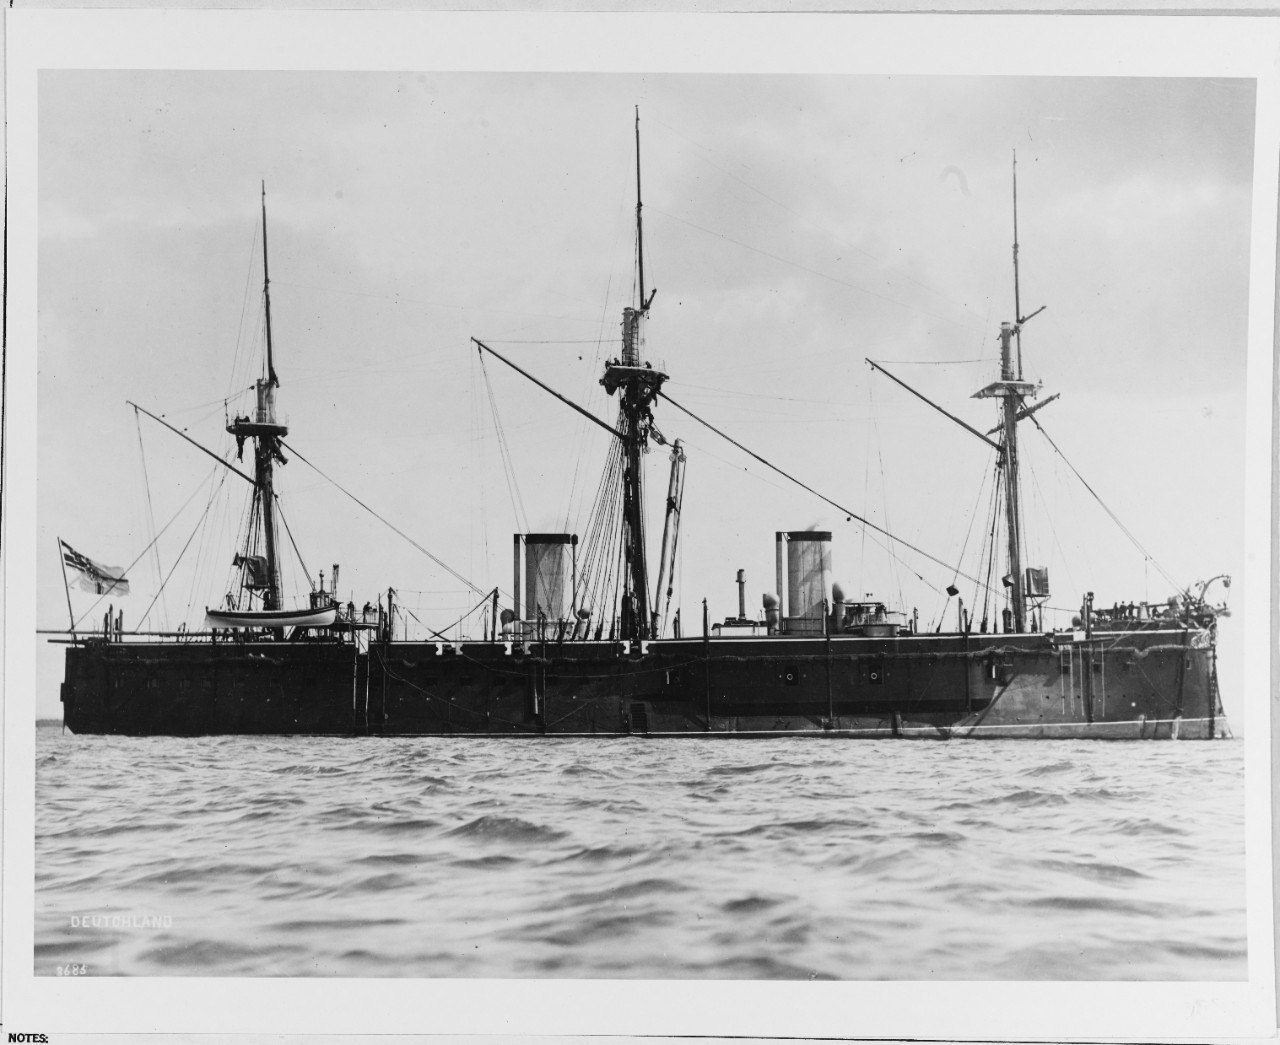 SMS DEUTSCHLAND (German battleship, 1874)